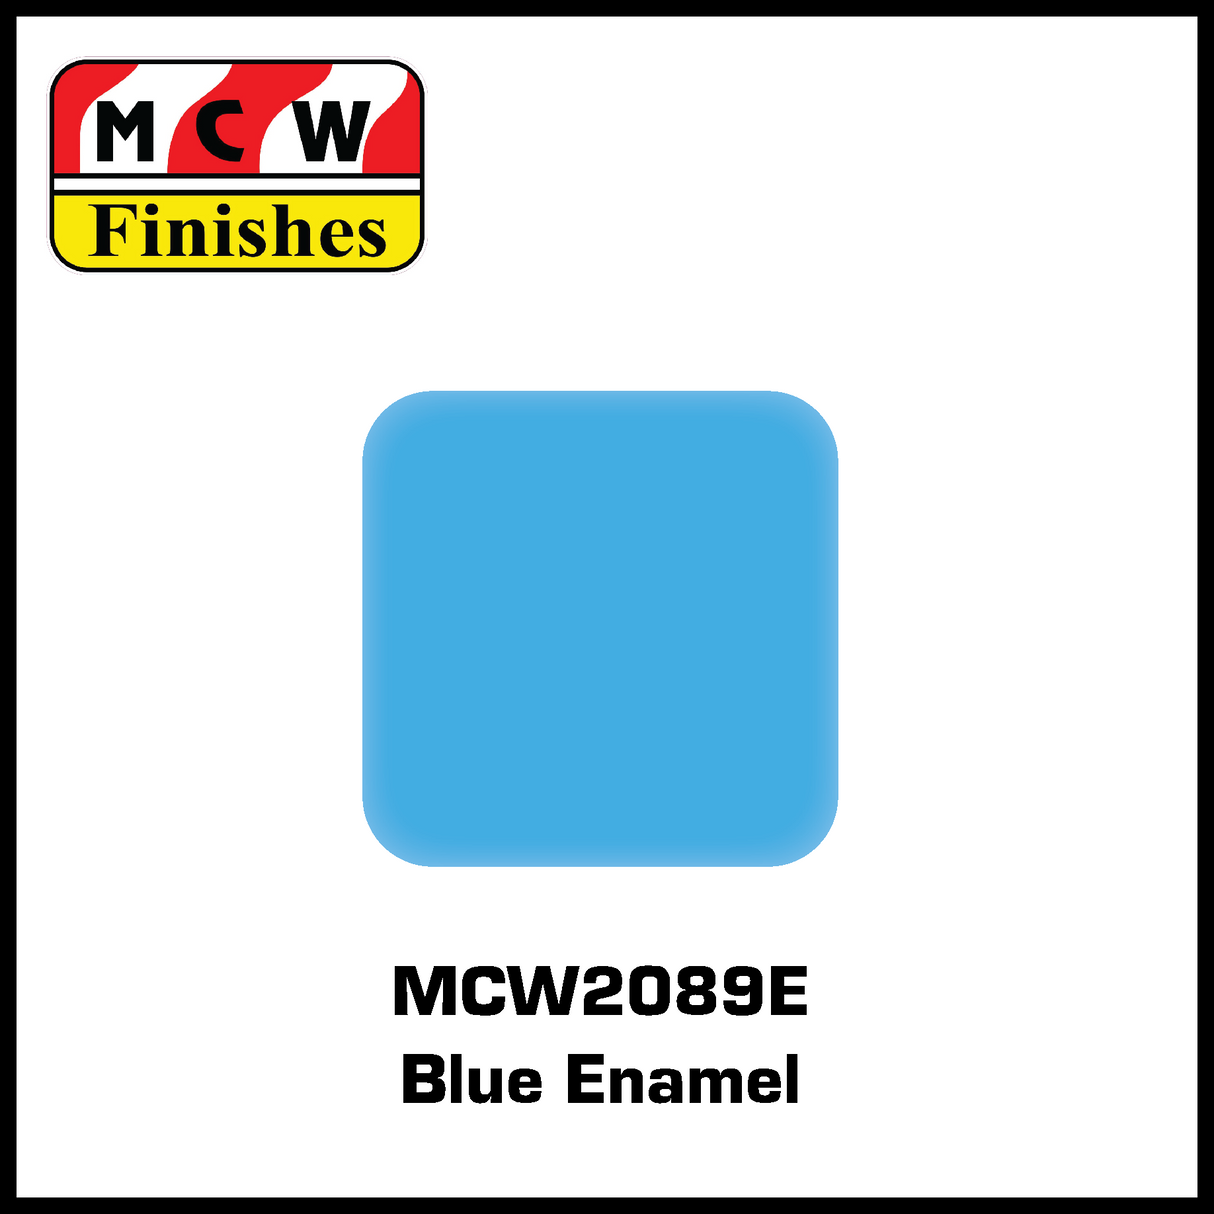 MCW Finishes 2089E Blue Enamel